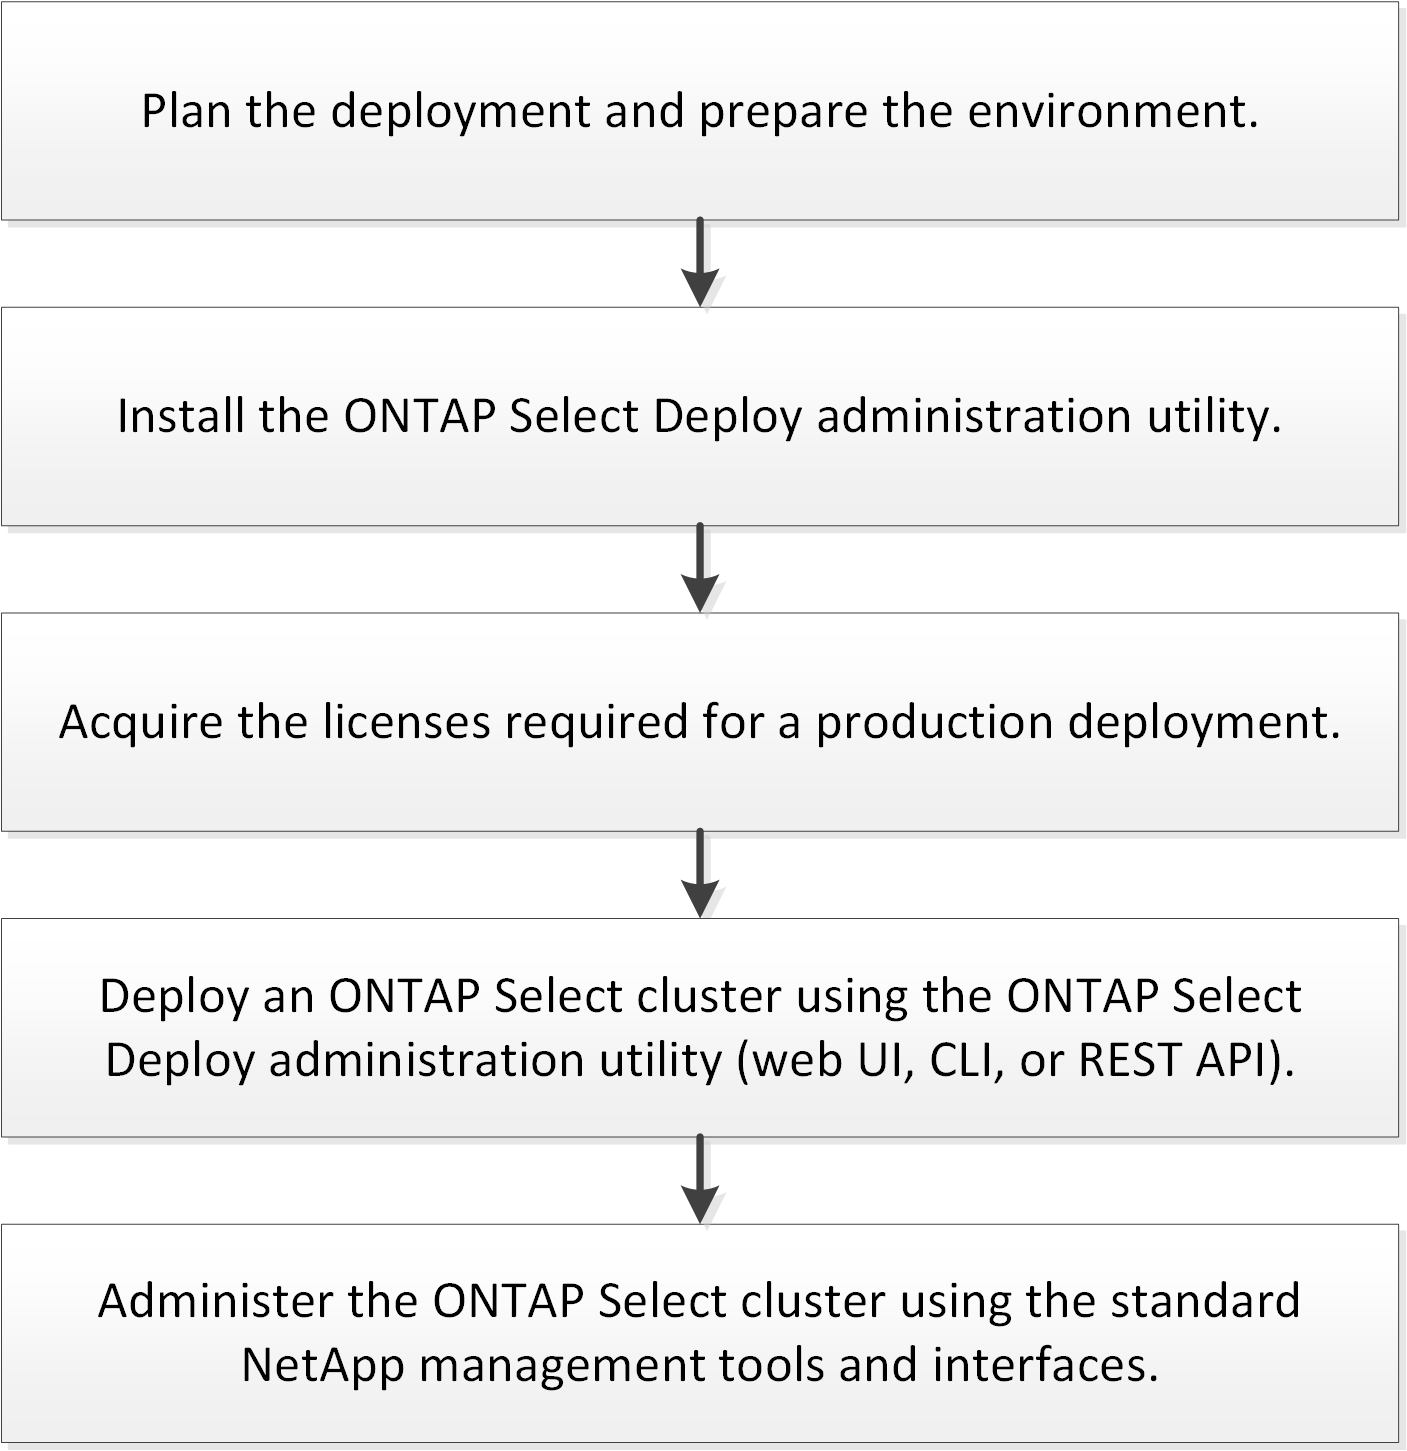 說明部署ONTAP Select 一個叢集所需的完整工作流程。